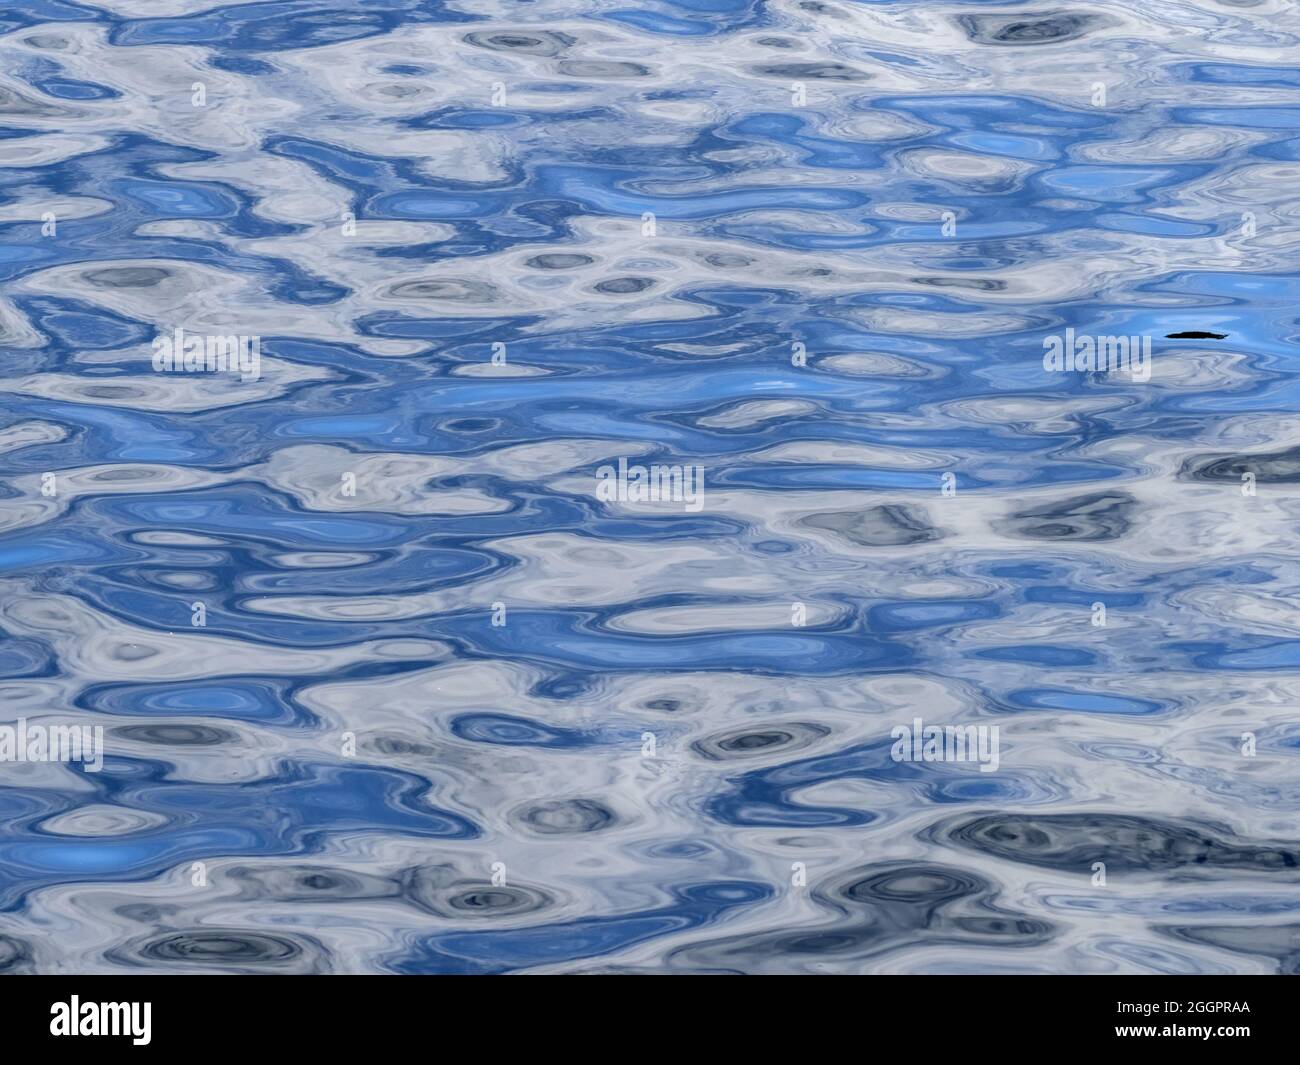 Reflection water pattern, Alaska Stock Photo